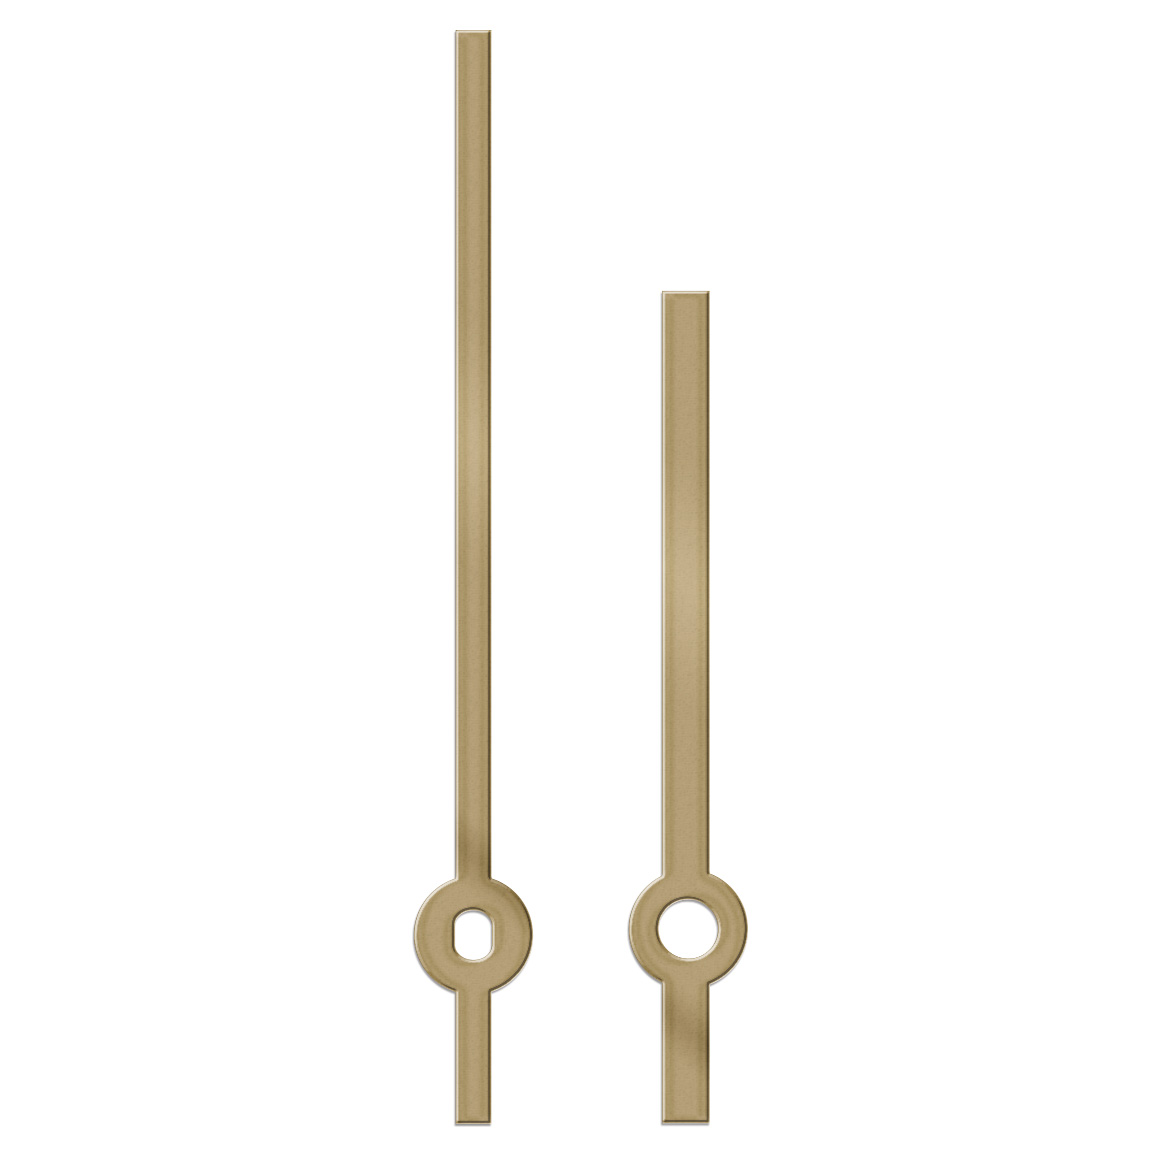 Paire d'aiguilles, baton, longueur 135 mm,
aluminium, doré, pour grandes horloges